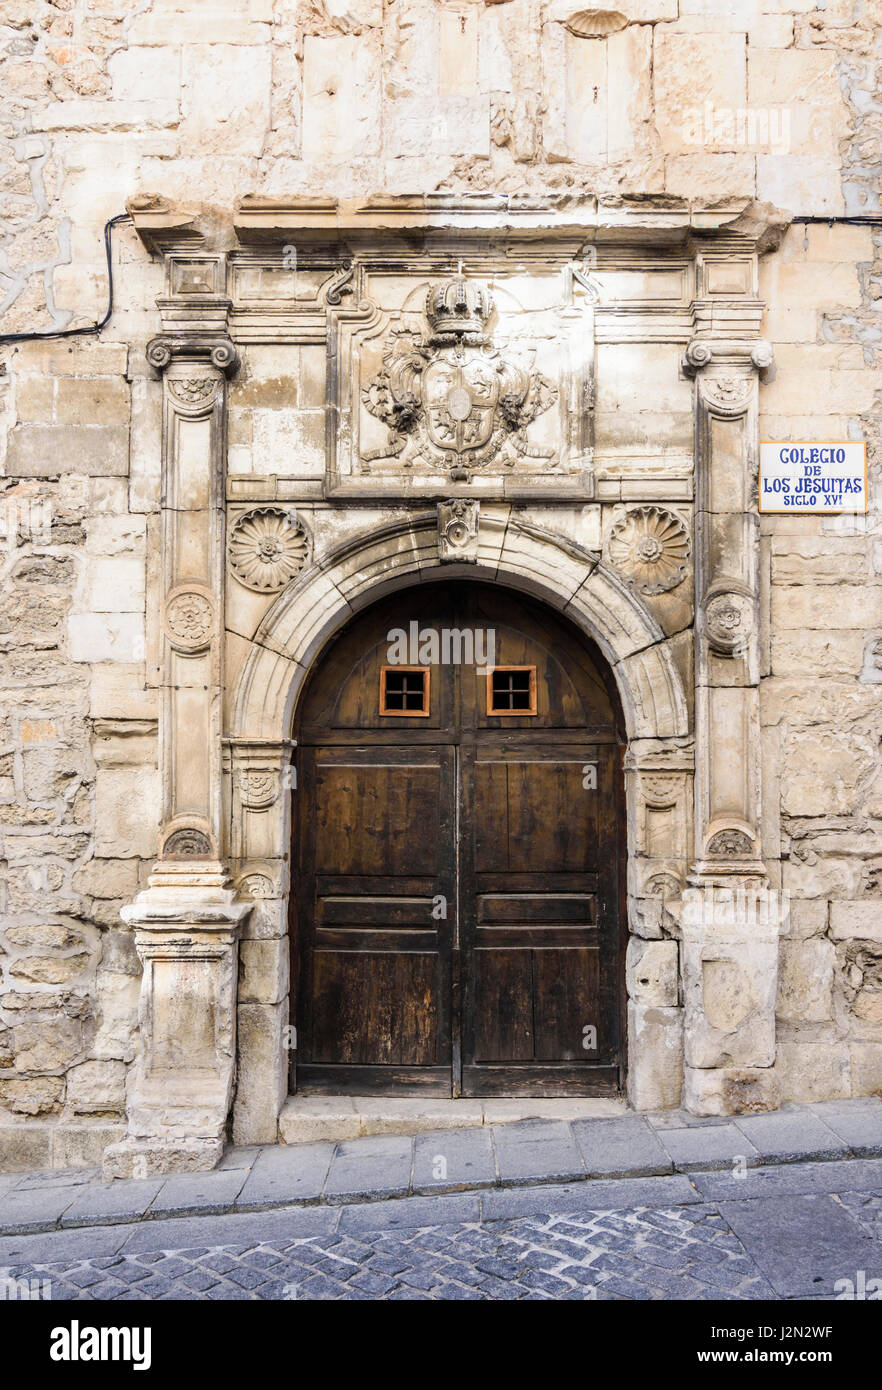 Las puertas dobles de madera y el escudo de armas de los Jesuitas en el antiguo Colegio de los Jesuitas, un edificio histórico en el casco antiguo de la ciudad medieval de Cuenca, España Foto de stock